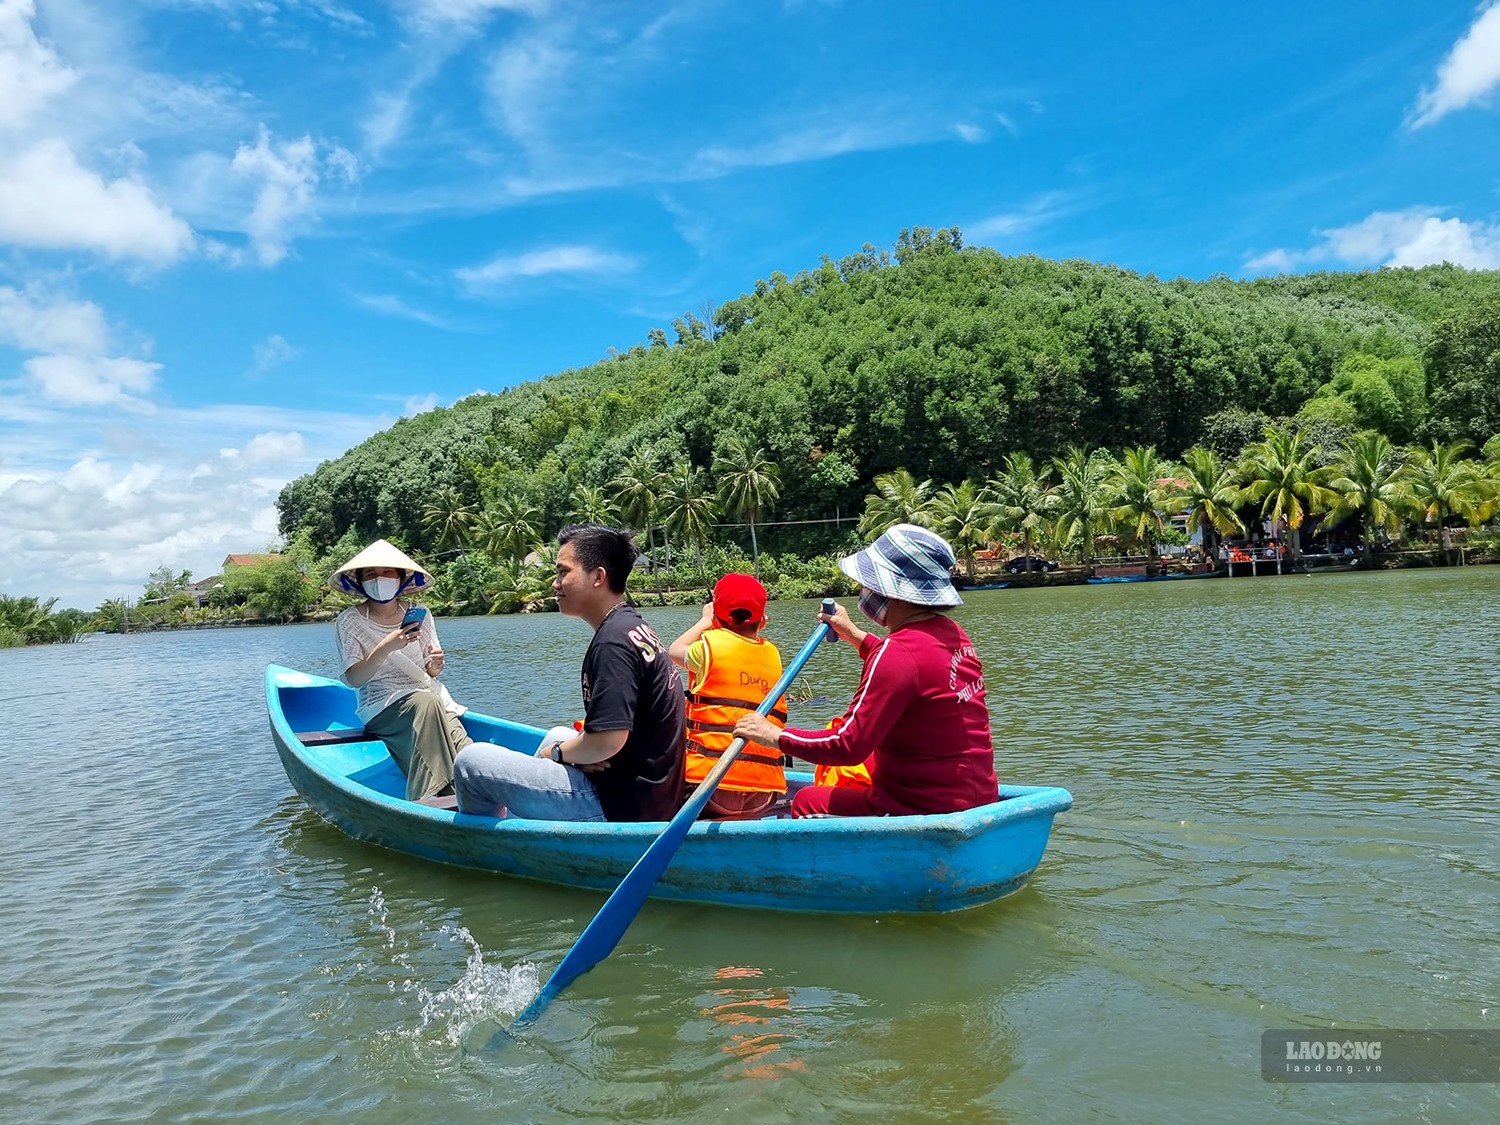 Rừng dừa nước Cà Ninh như một chiếc máy điều hòa tự nhiên, du khách khi đến đây sẽ hòa mình vào khung cảnh sông nước hữu tình với không khí trong lành, mát mẻ. Ảnh: Ngọc Viên